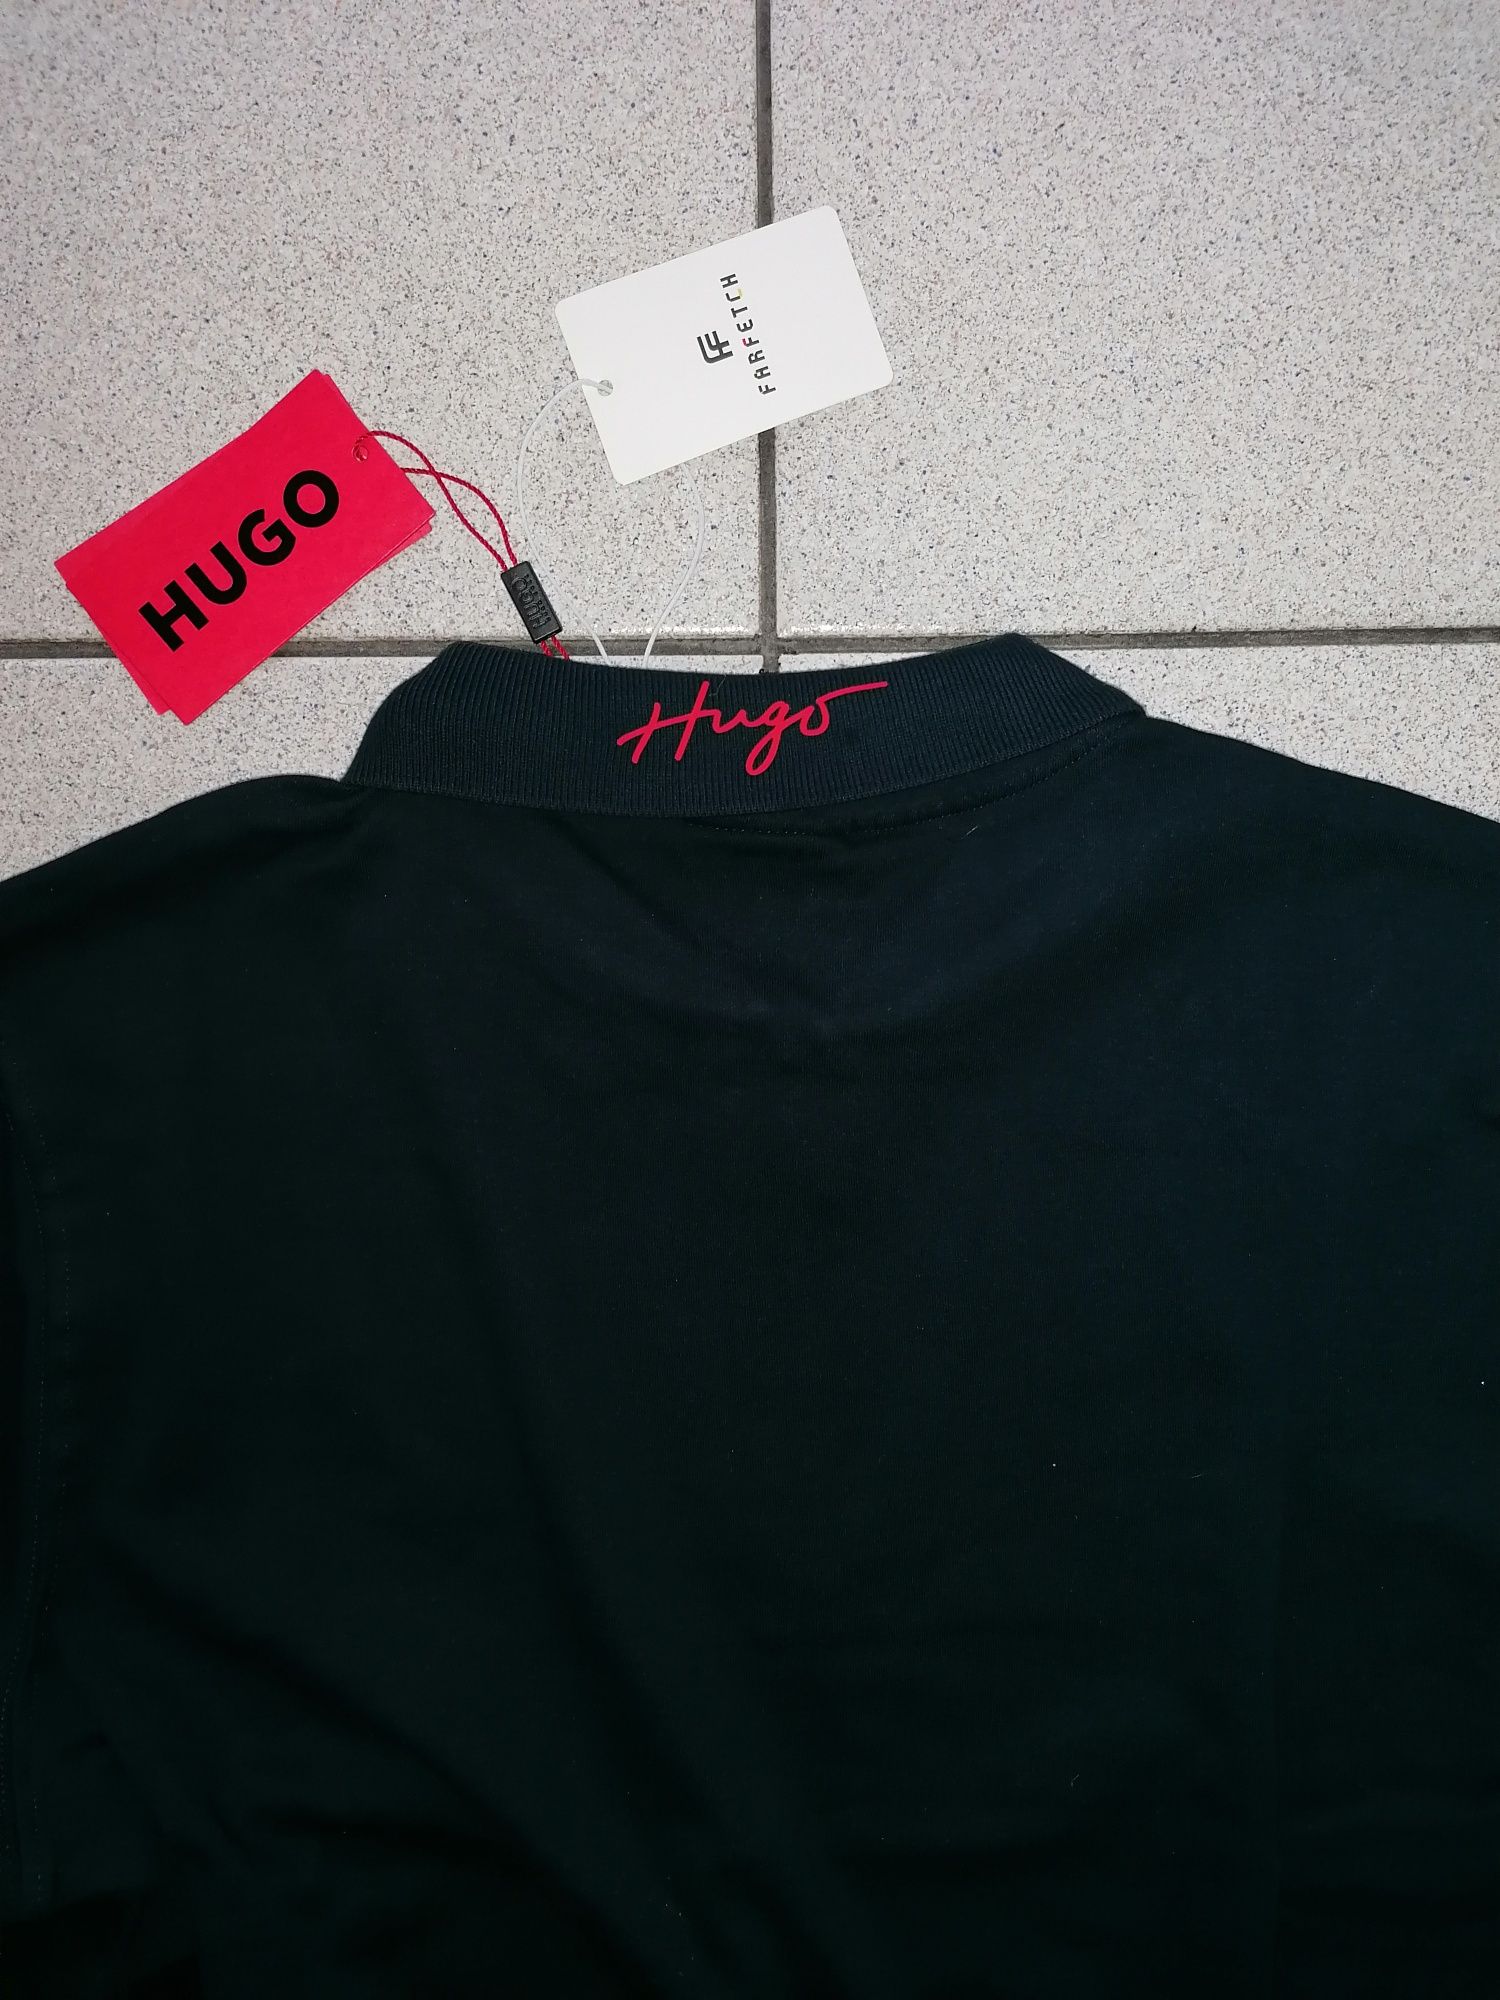 HUGO BOSS® - 50% - НОВА - мъжка блуза - 54(XL)